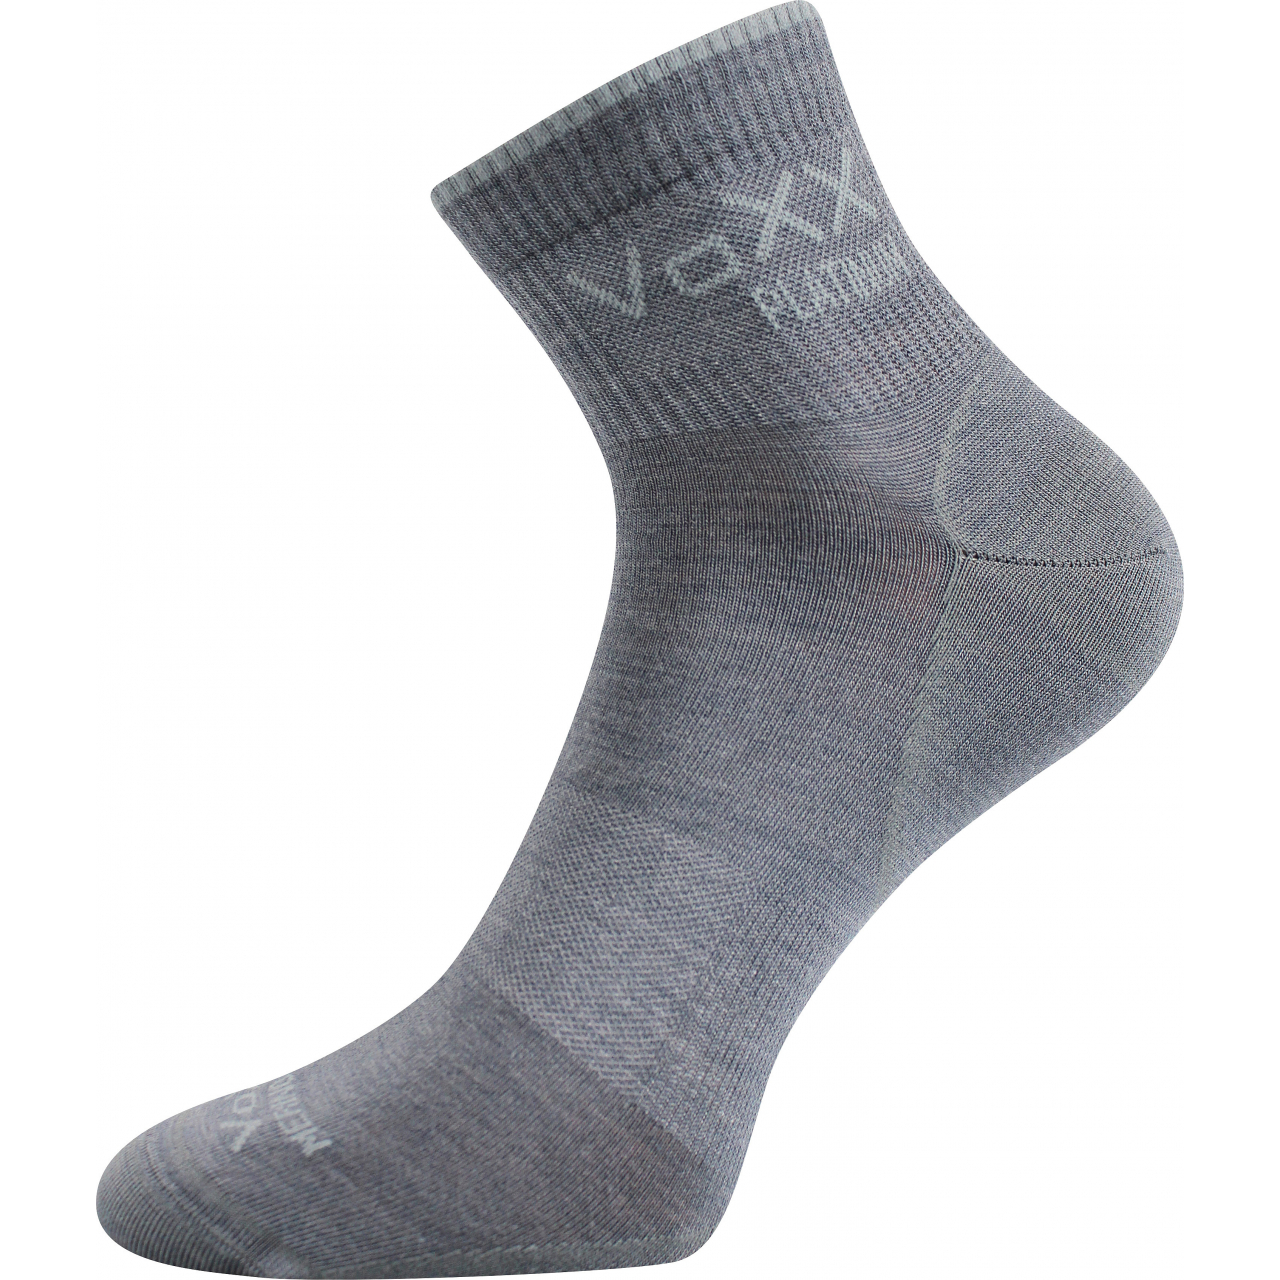 Ponožky klasické unisex Voxx Radik - světle šedé, 35-38